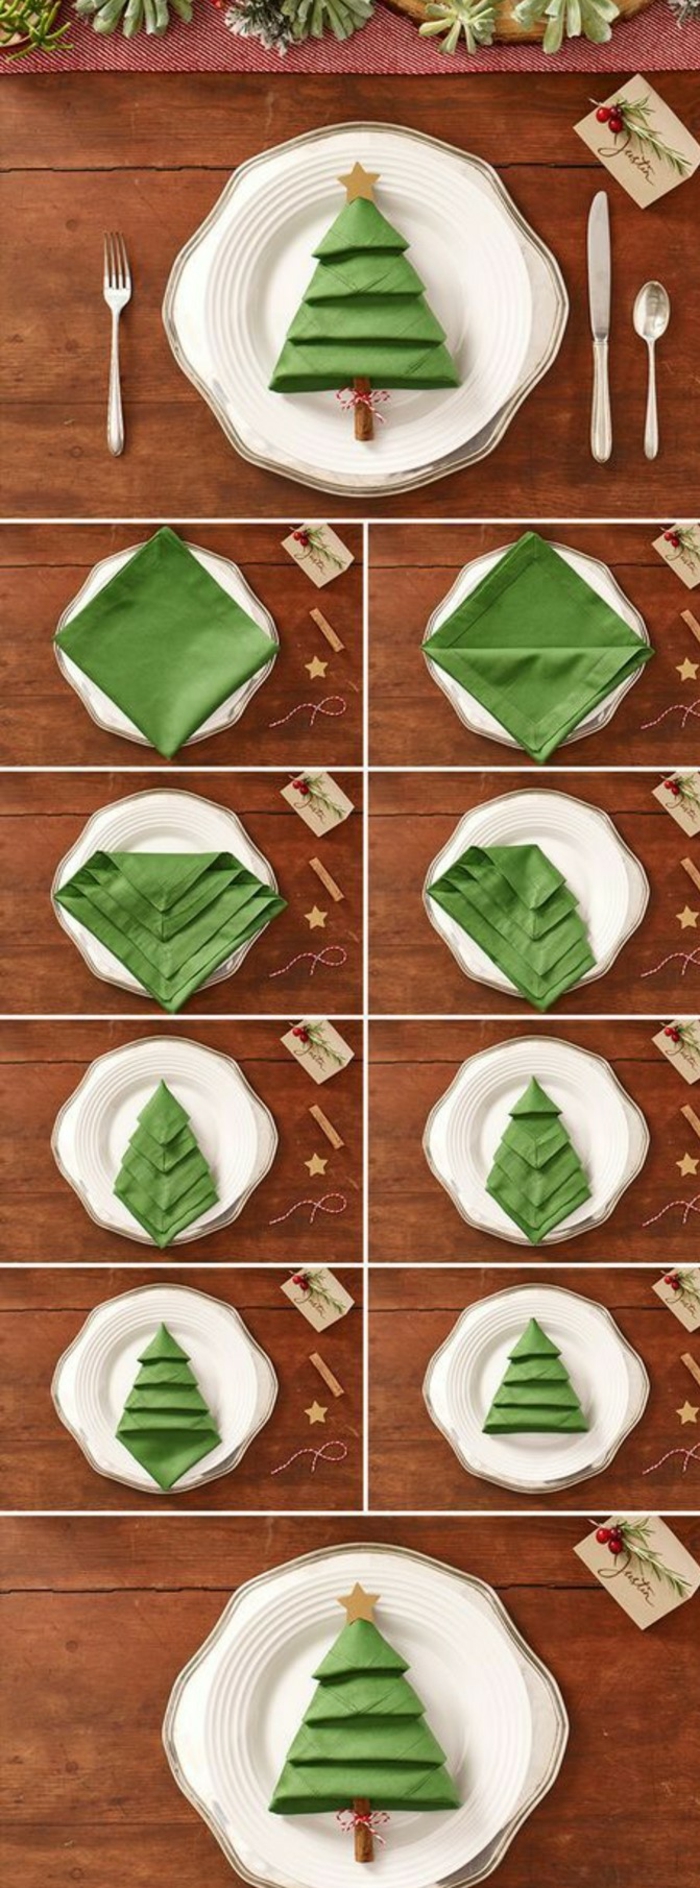 centre de table noel, pliage de serviette verte en forme de sapin dans une assiette, comment disposer les plats pendant le souper de Noël